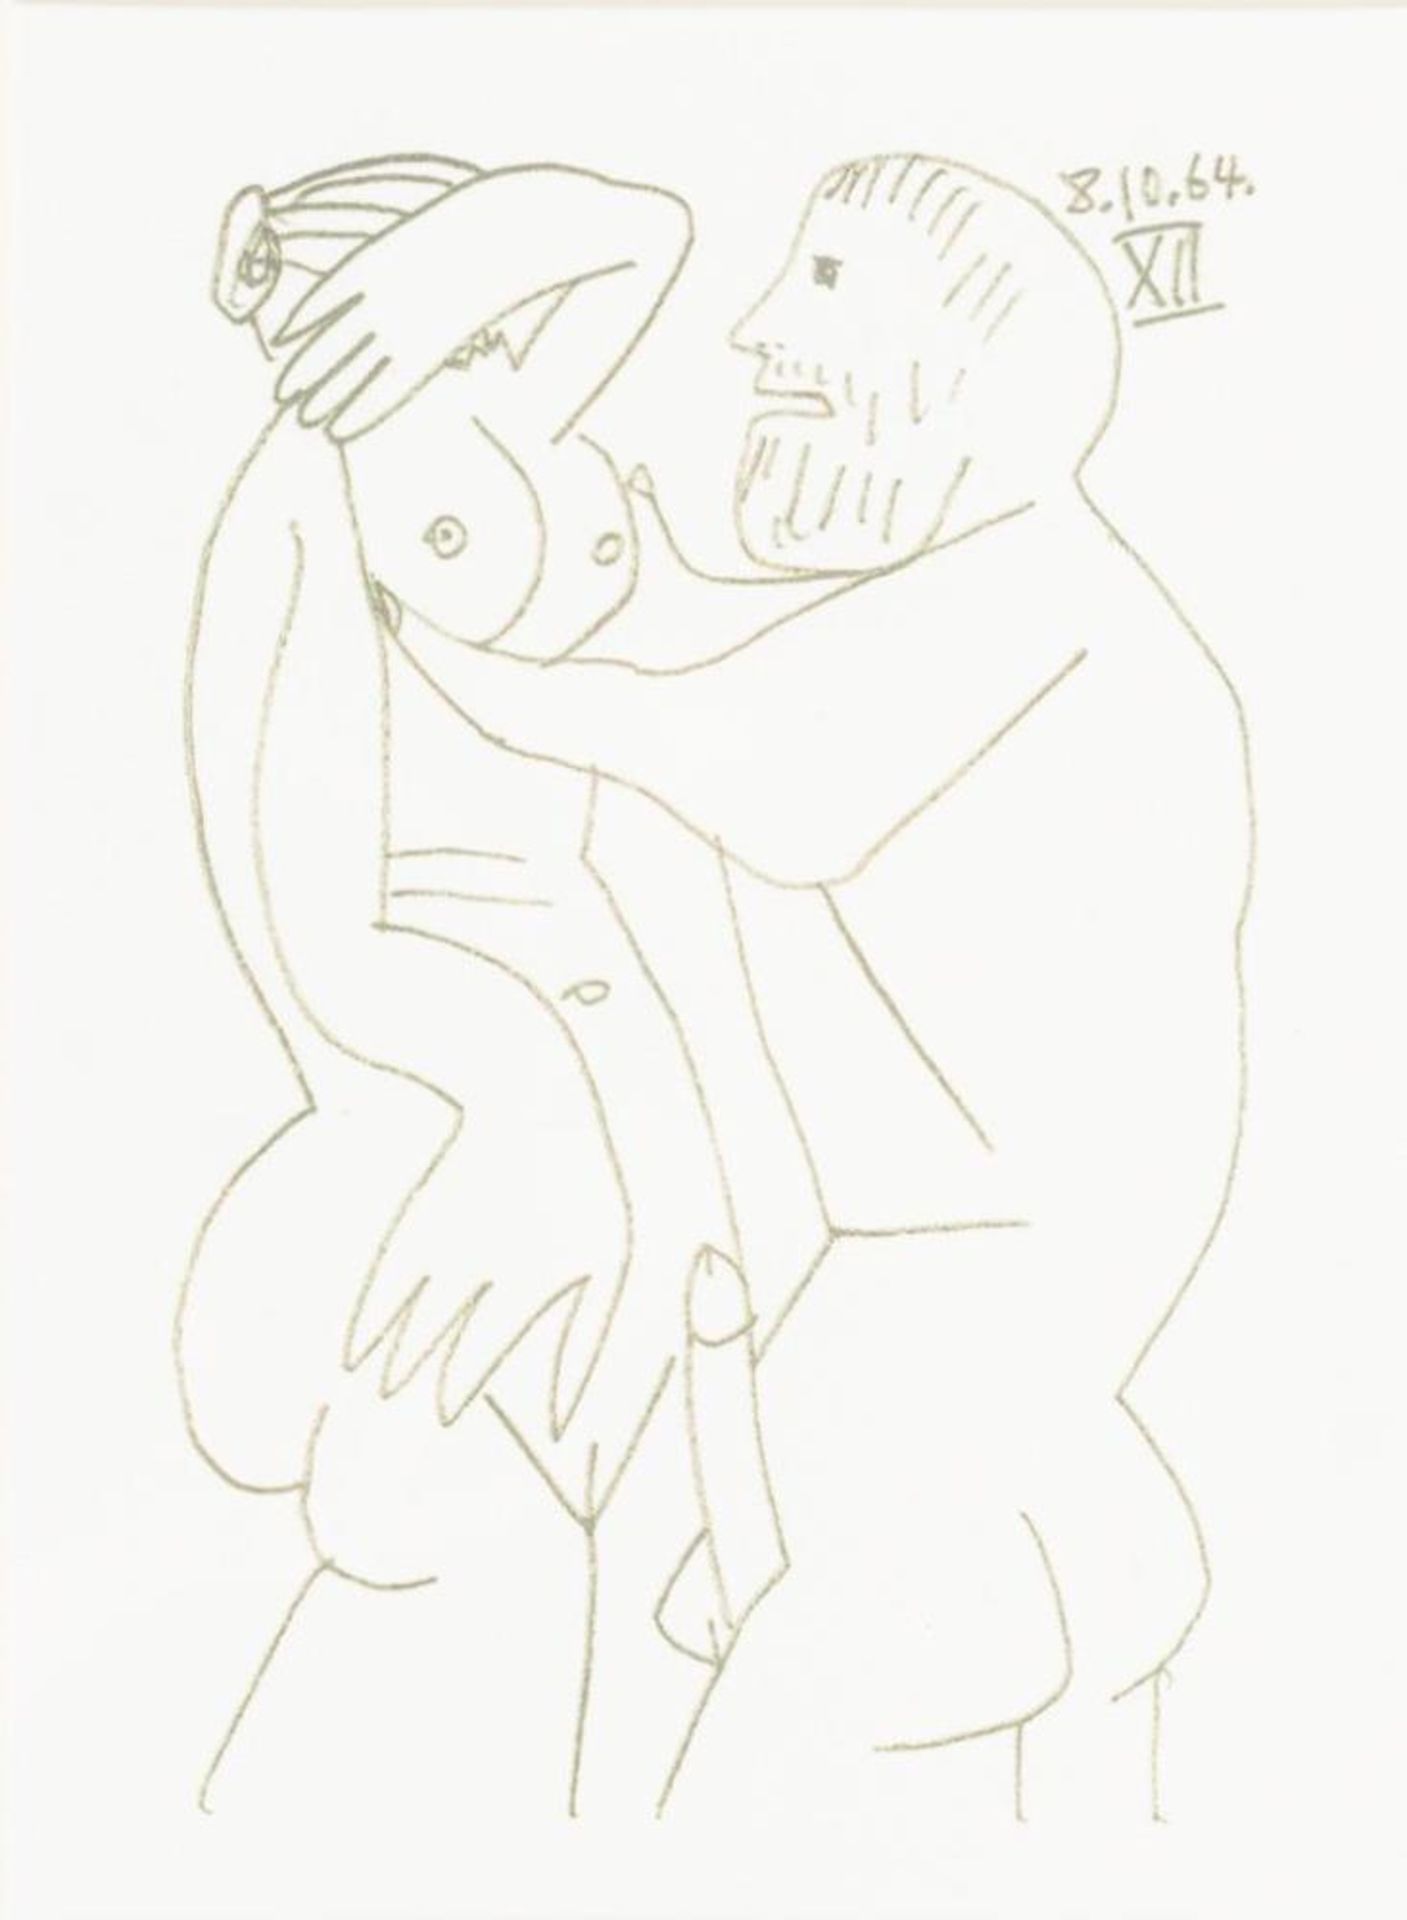 5 erotische Werke: "Skizze anno 1964" - Image 3 of 6